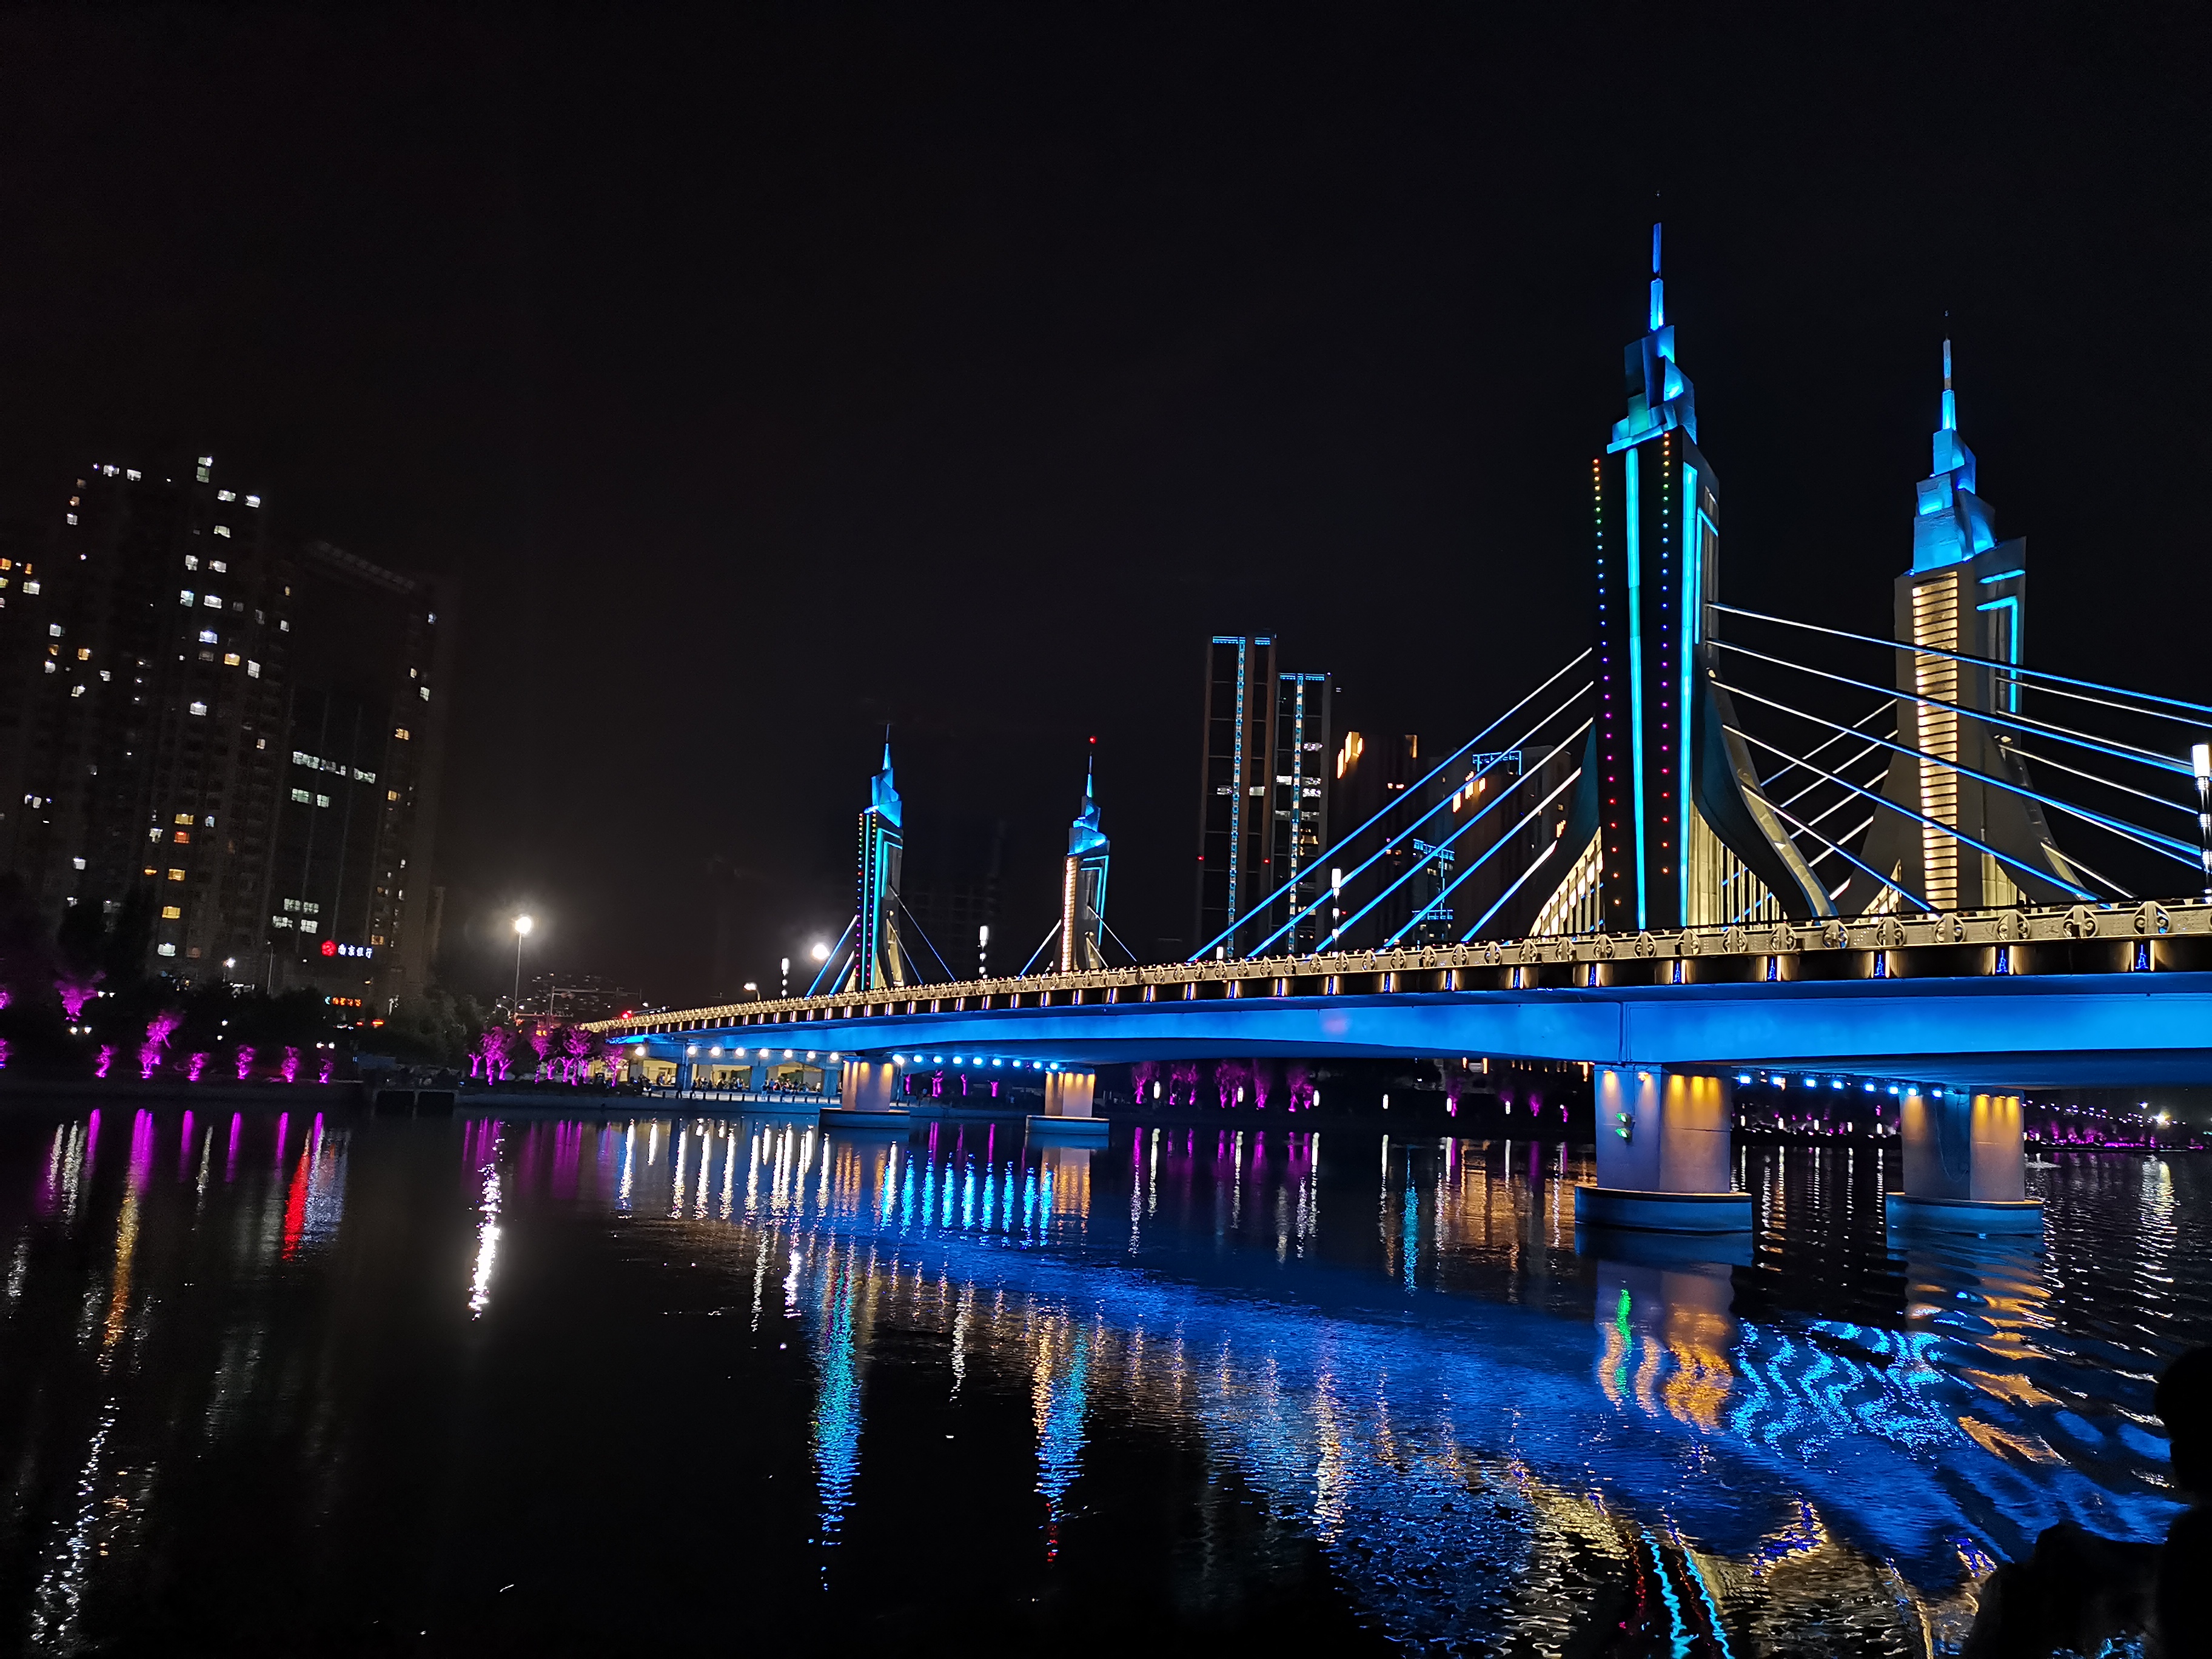 大运河灯光秀今晚首秀中国最宽桥体水幕展示通州八景